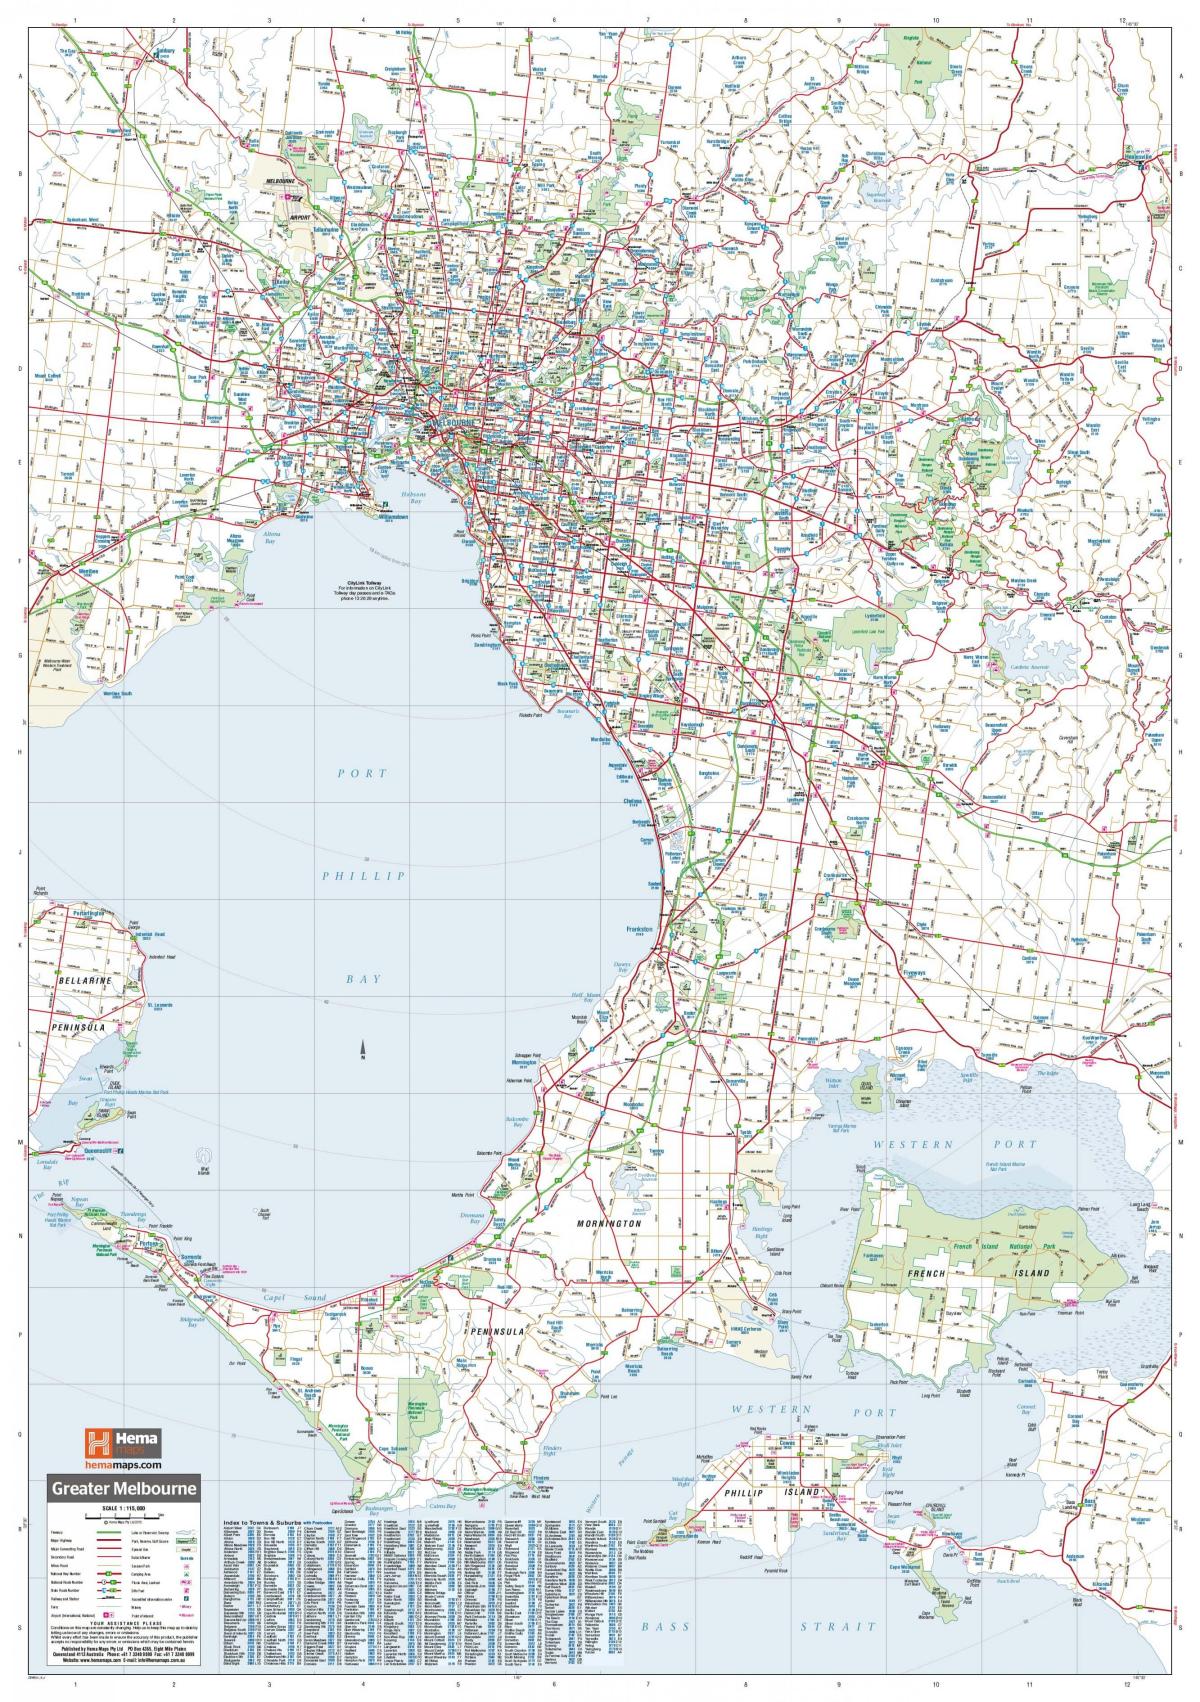 Mappa delle strade di Melbourne